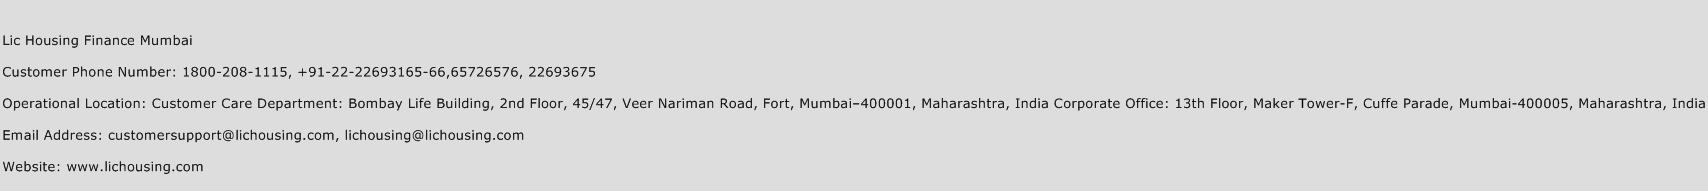 LIC Housing Finance Mumbai Phone Number Customer Service